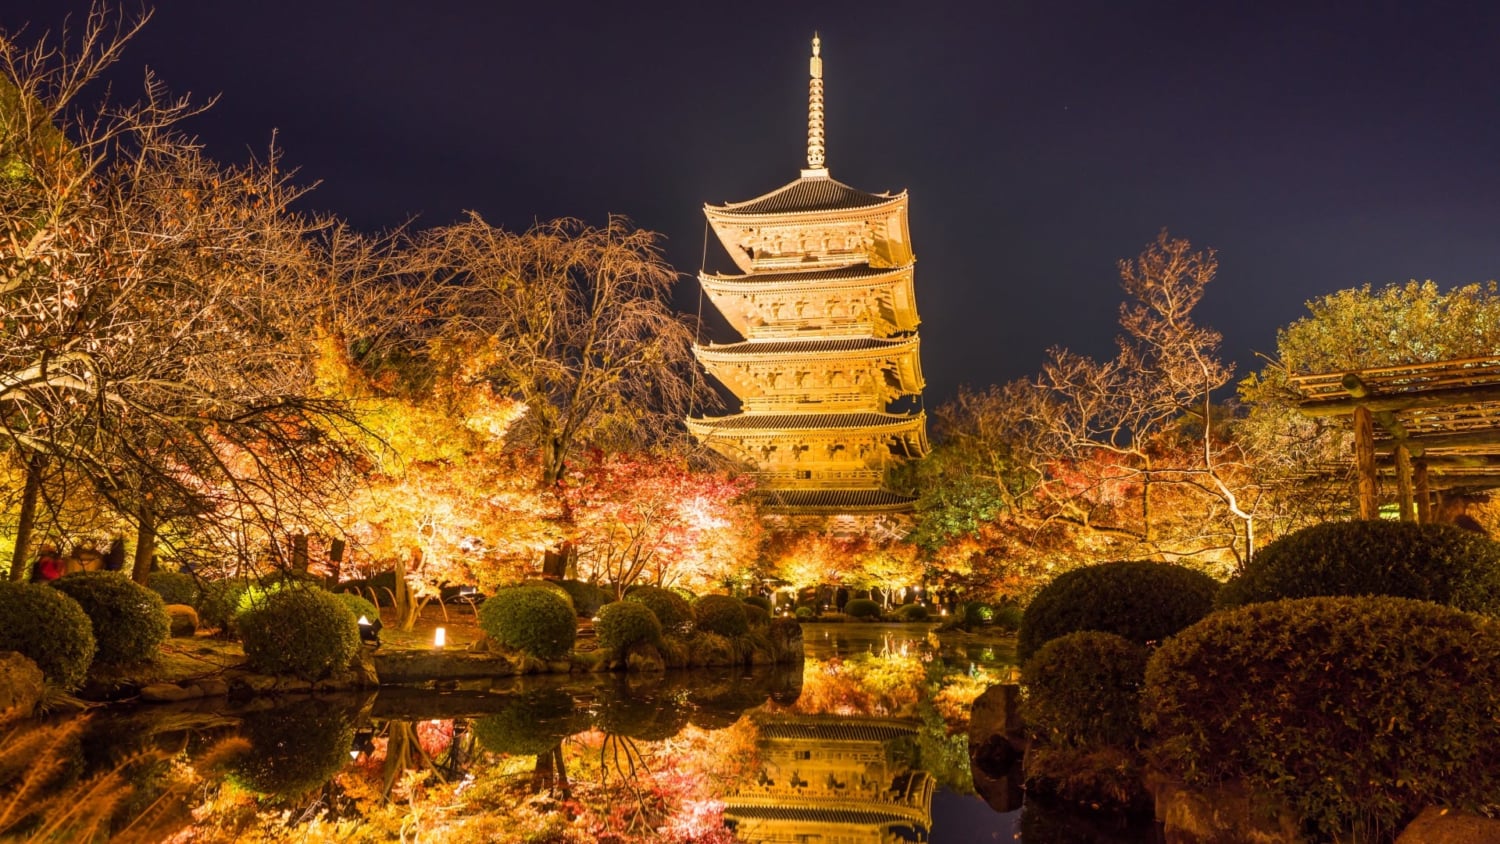 京都 東寺 を観光 桜 紅葉ライトアップと五重塔特別拝観を見逃さないで Skyticket 観光ガイド